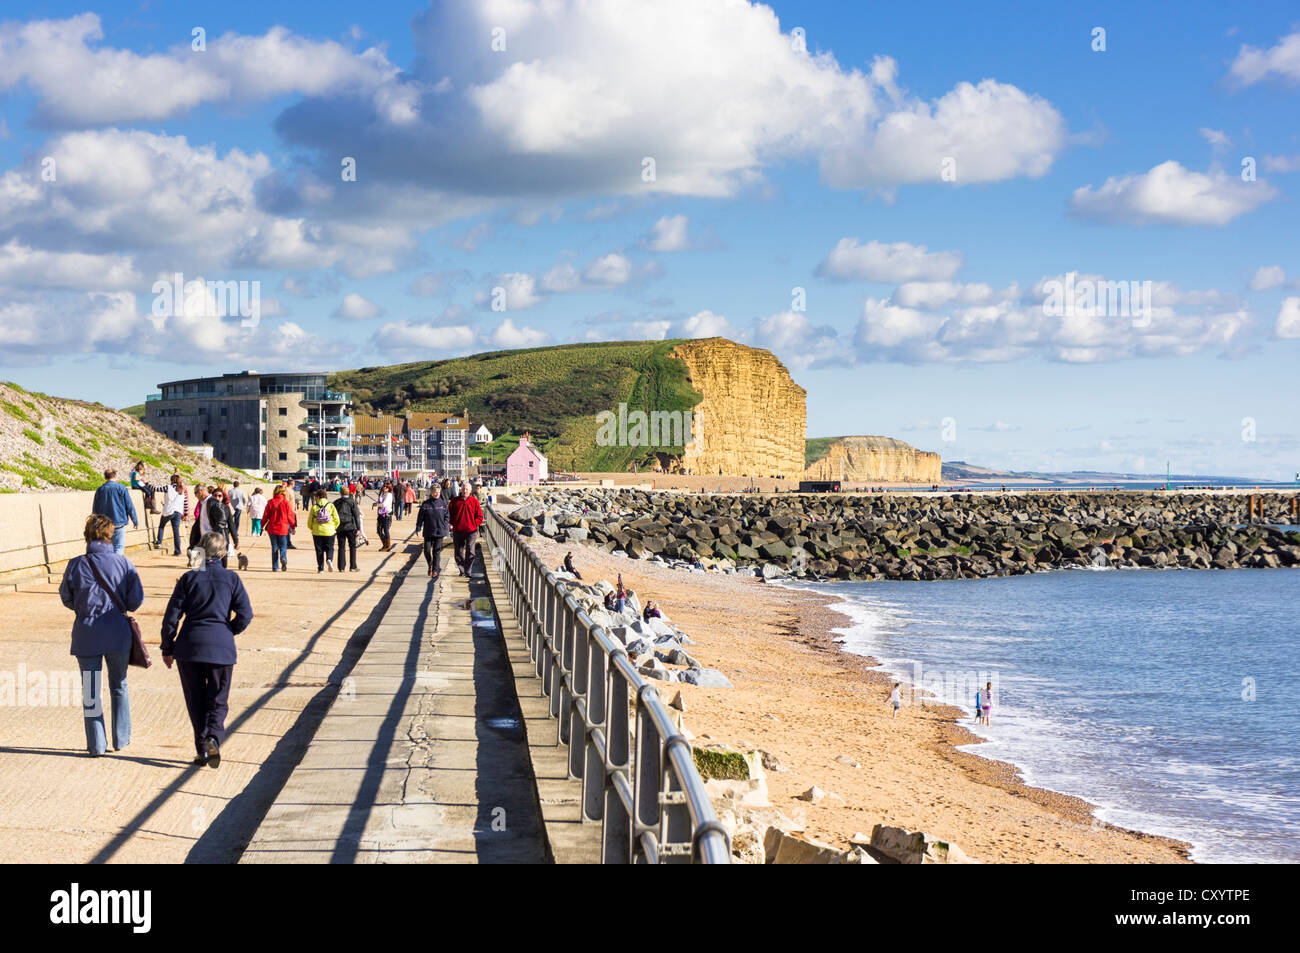 La gente caminando a lo largo de West Bay, Dorset, paseo marítimo en la costa de Dorset, Reino Unido Foto de stock